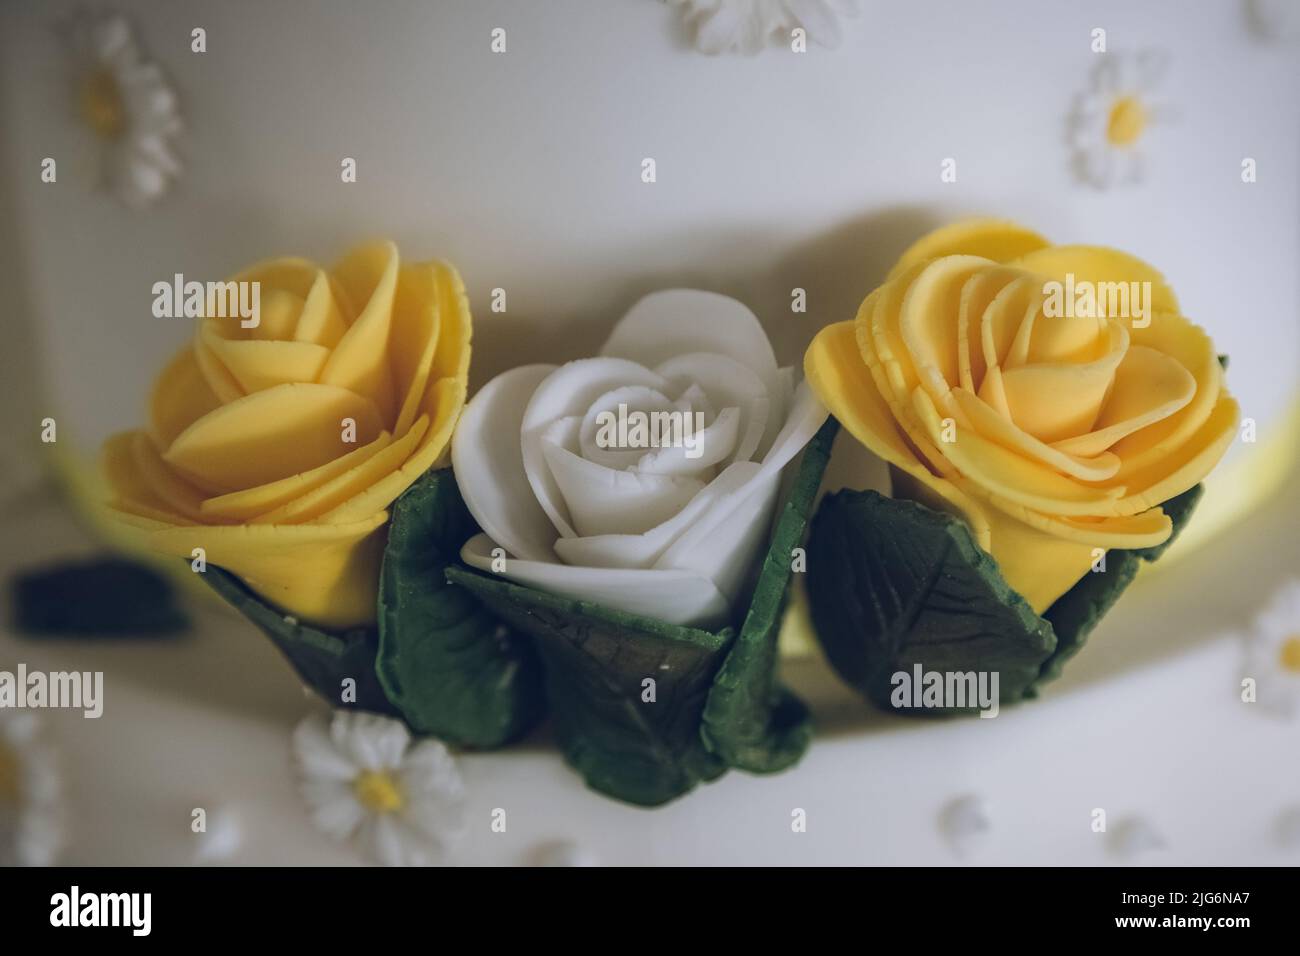 Un gros plan de roses jaunes et blanches sur un gâteau de mariage fait de glaçage comme décorations de gâteau Banque D'Images